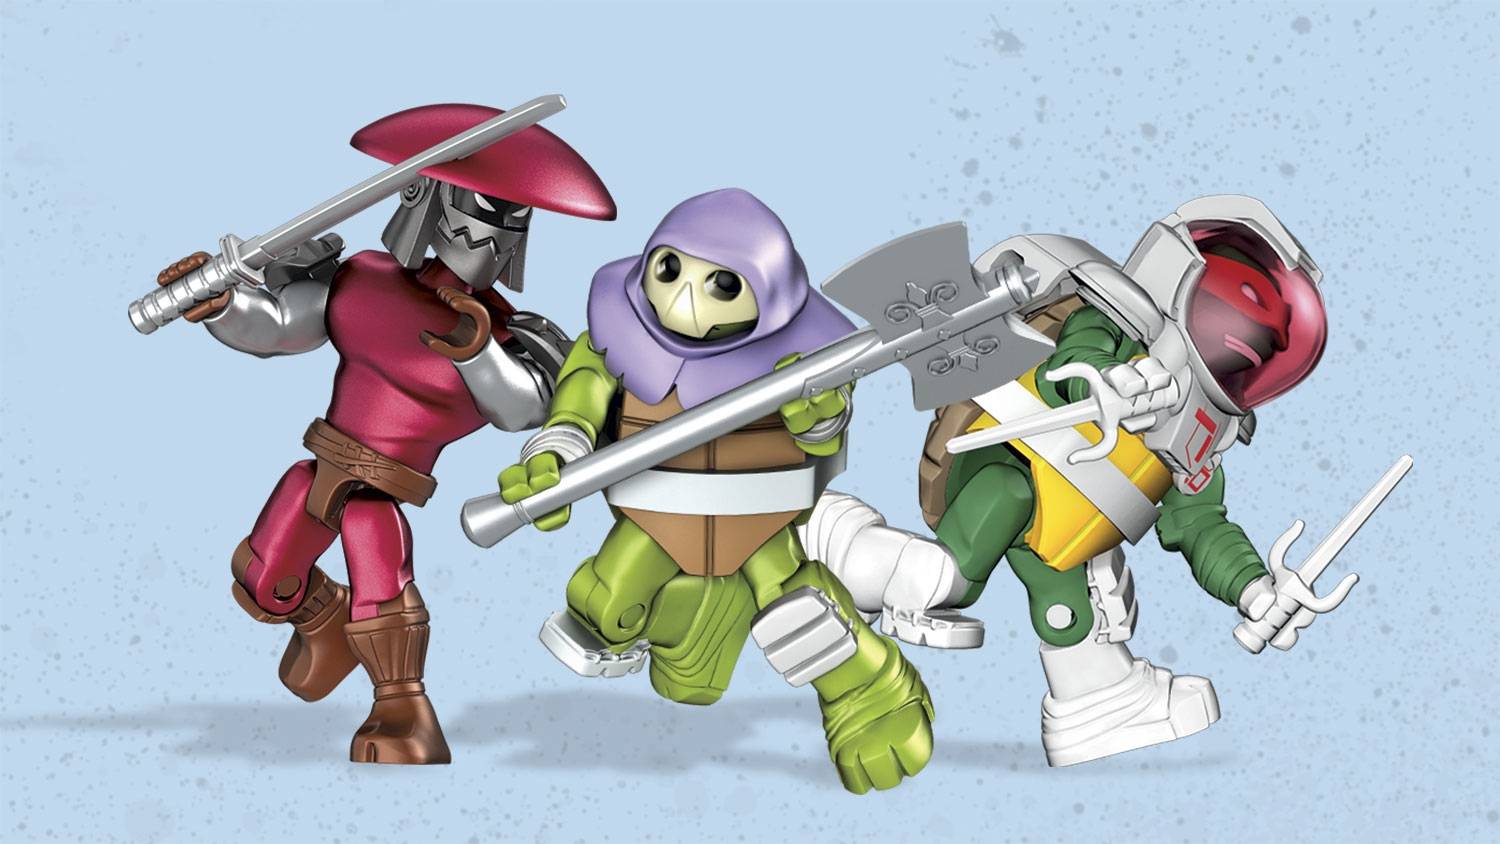 ninja-turtles-blind-bag-pack-series-6-figures-01.jpg